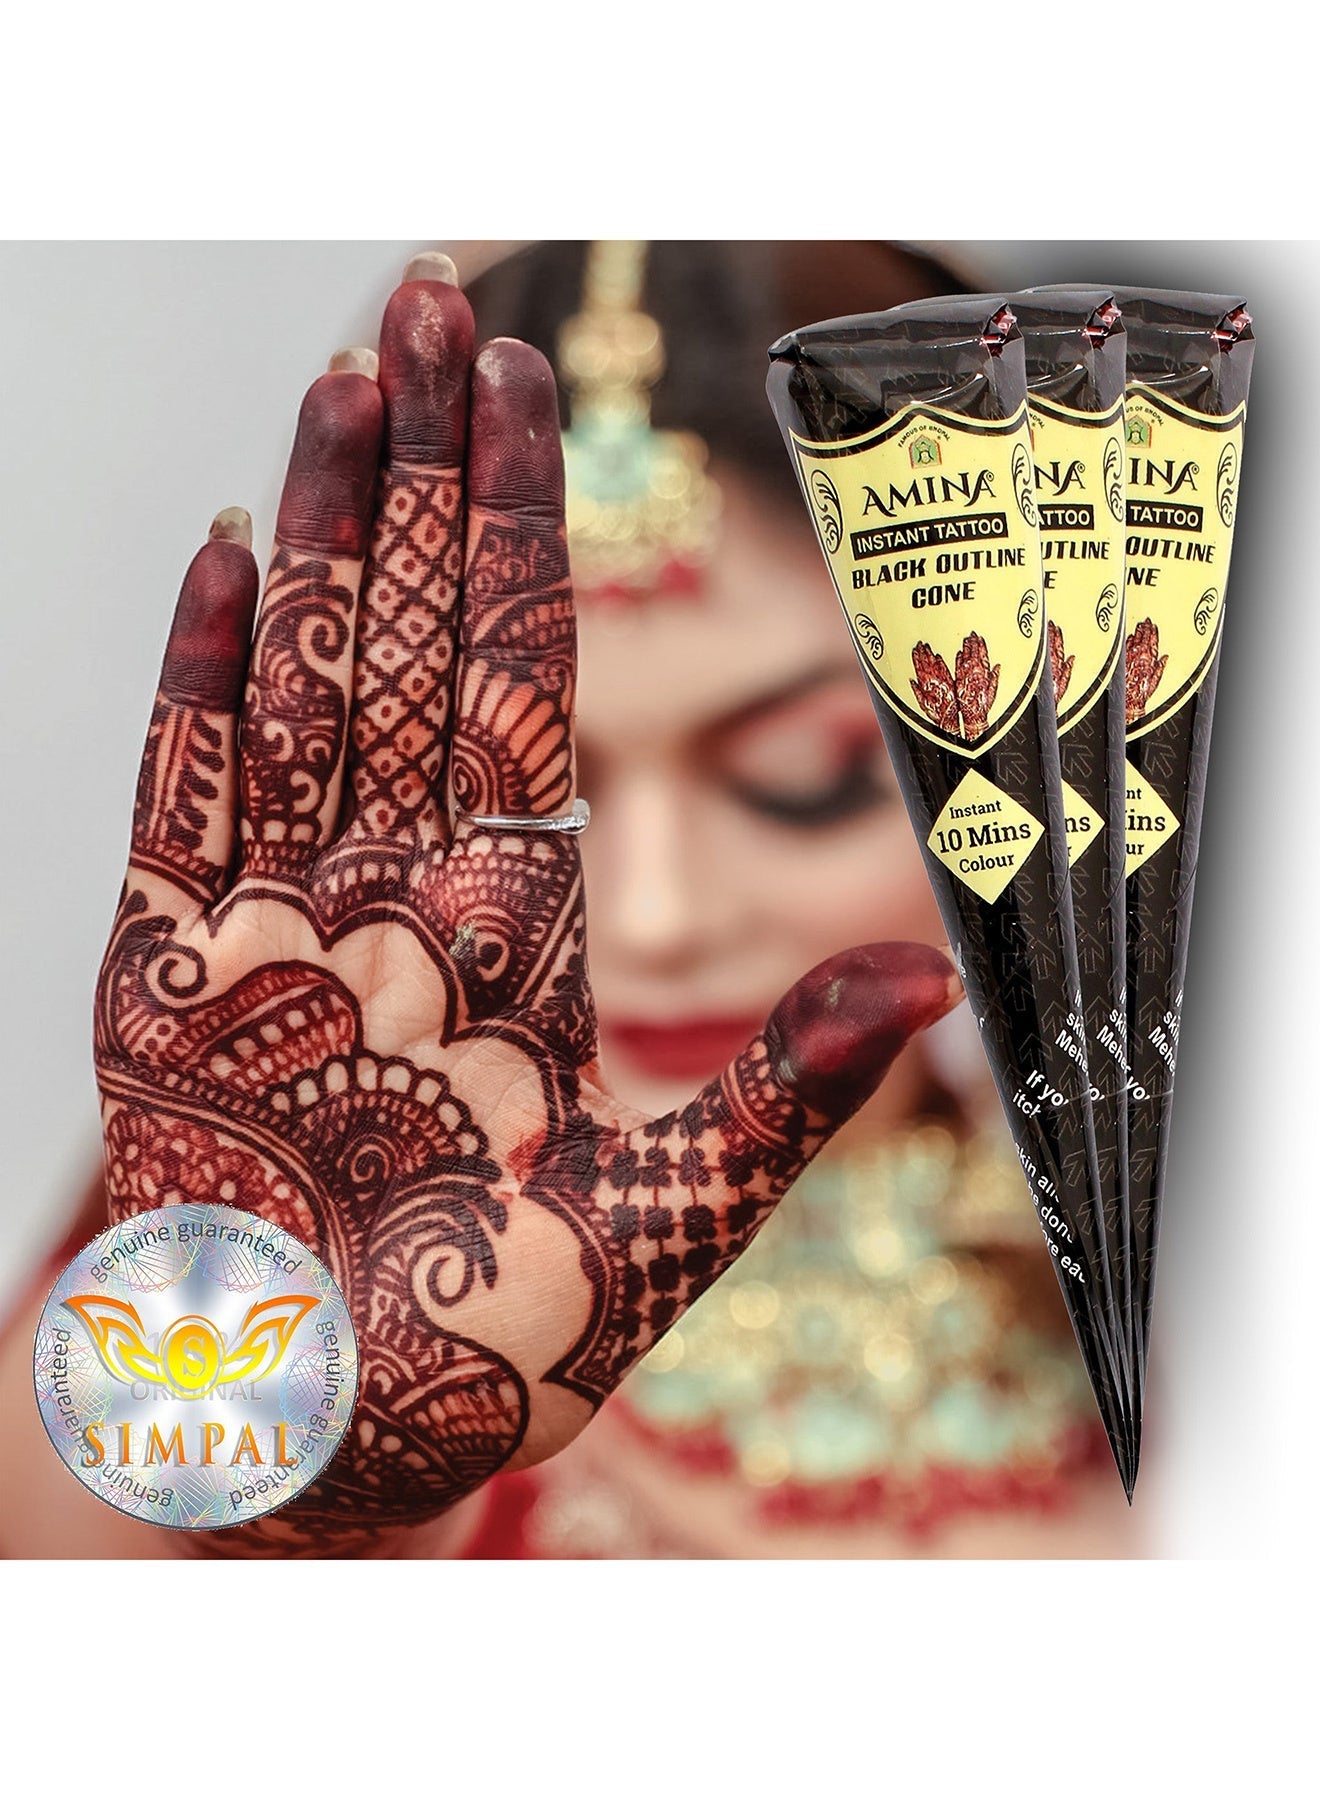 Organic Henna Cones Amina Instant Mehendi Cone Black 25 gm Value Pack of 3 